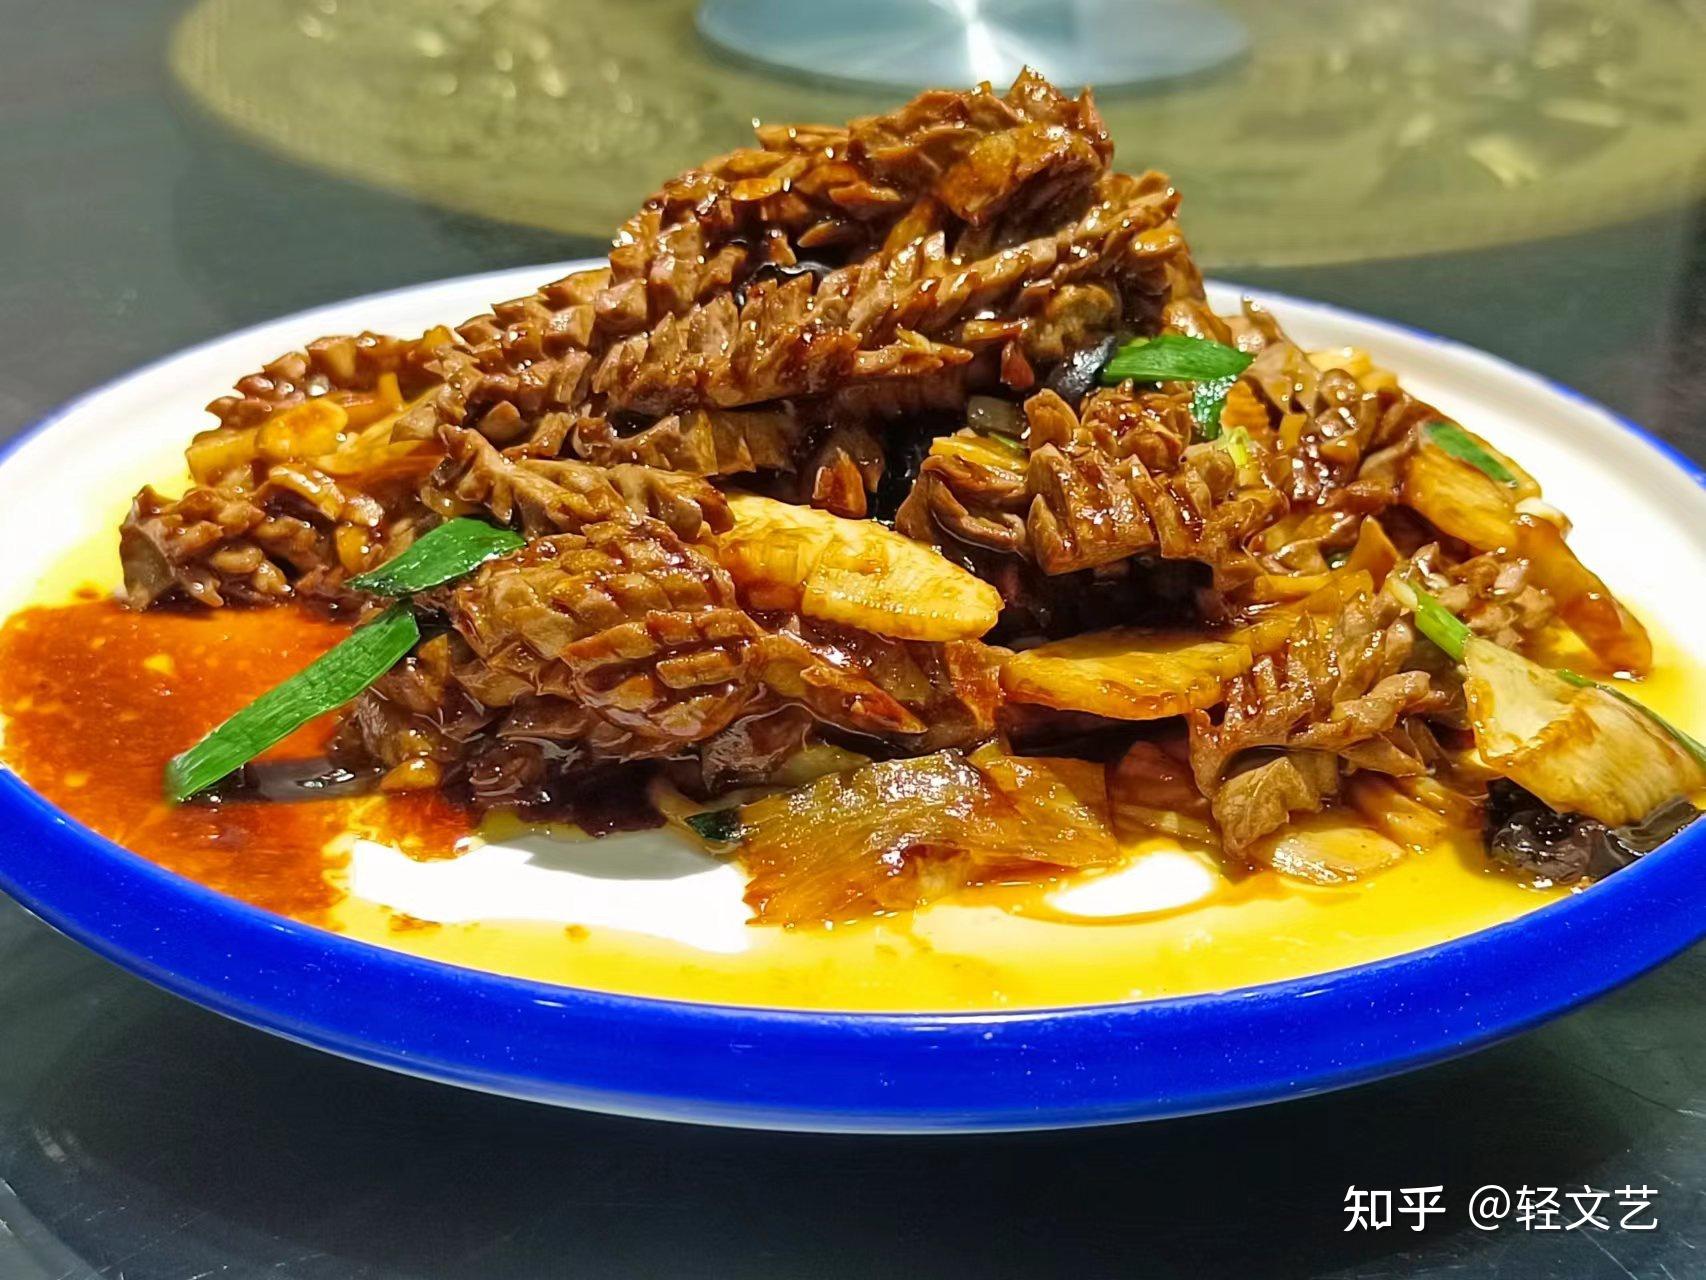 7分见刀工、3分见炒工的传统菜滑炒鸡丝，那是中国传统菜高峰的年代 - 哔哩哔哩